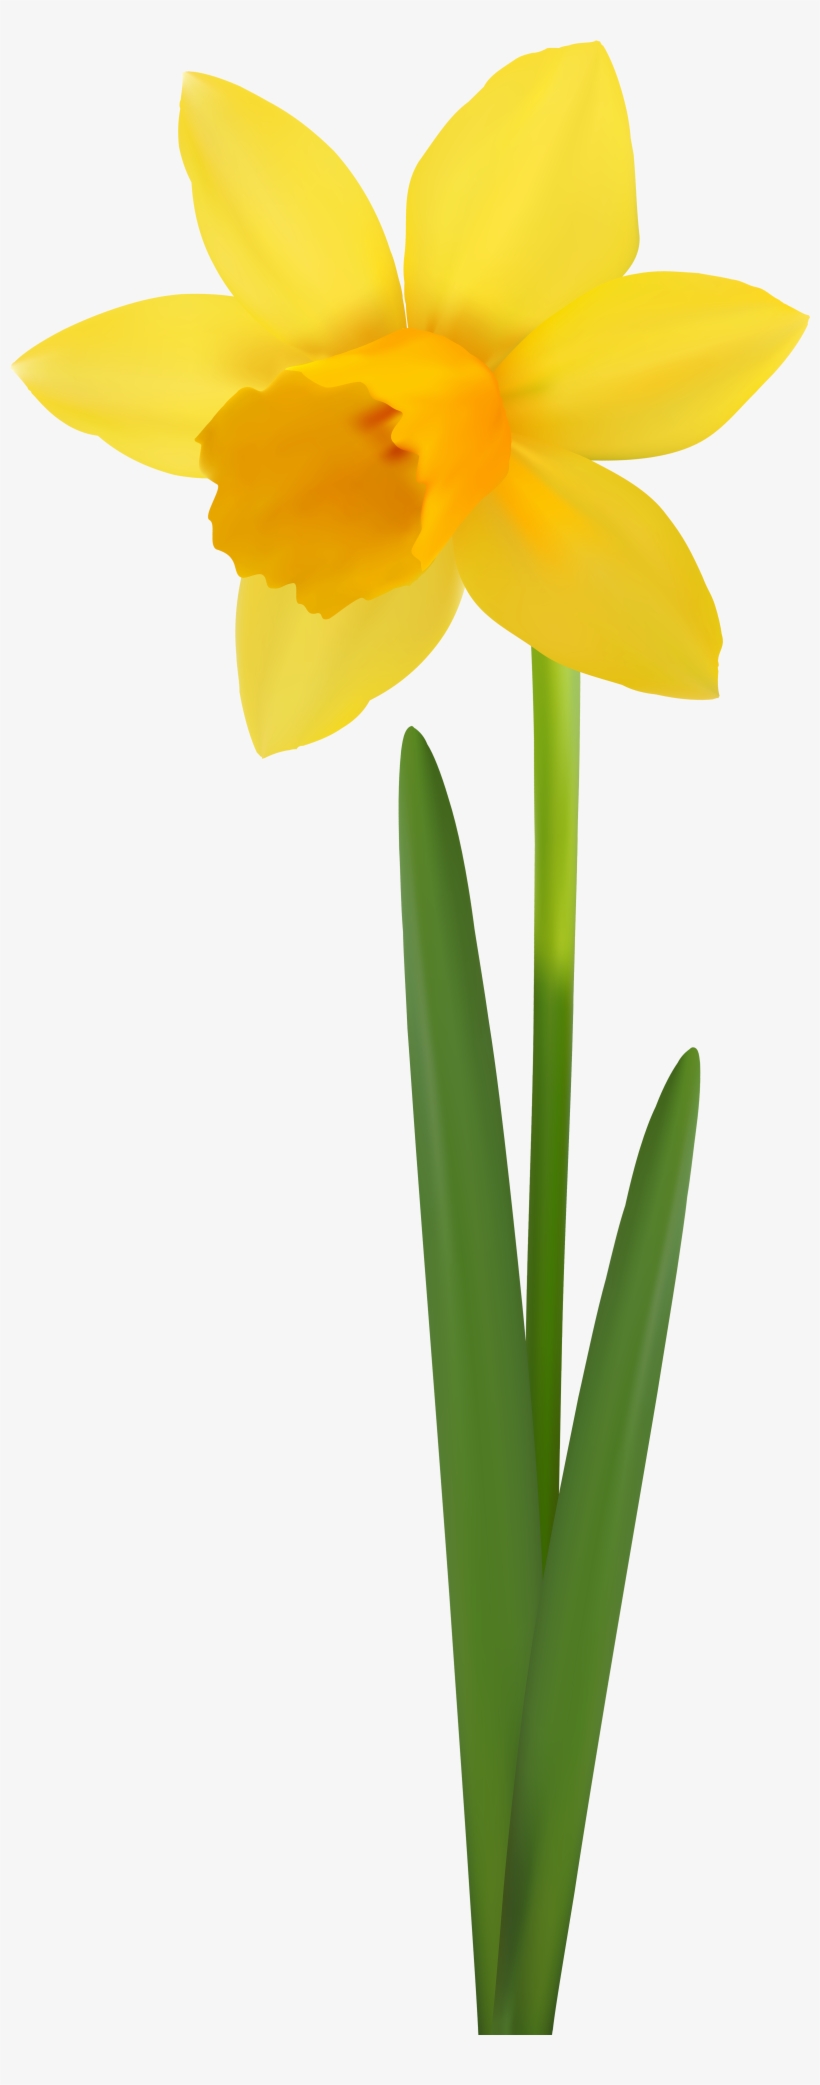 Daffodil Flower Transparent Image - Narcissus, transparent png #8946165